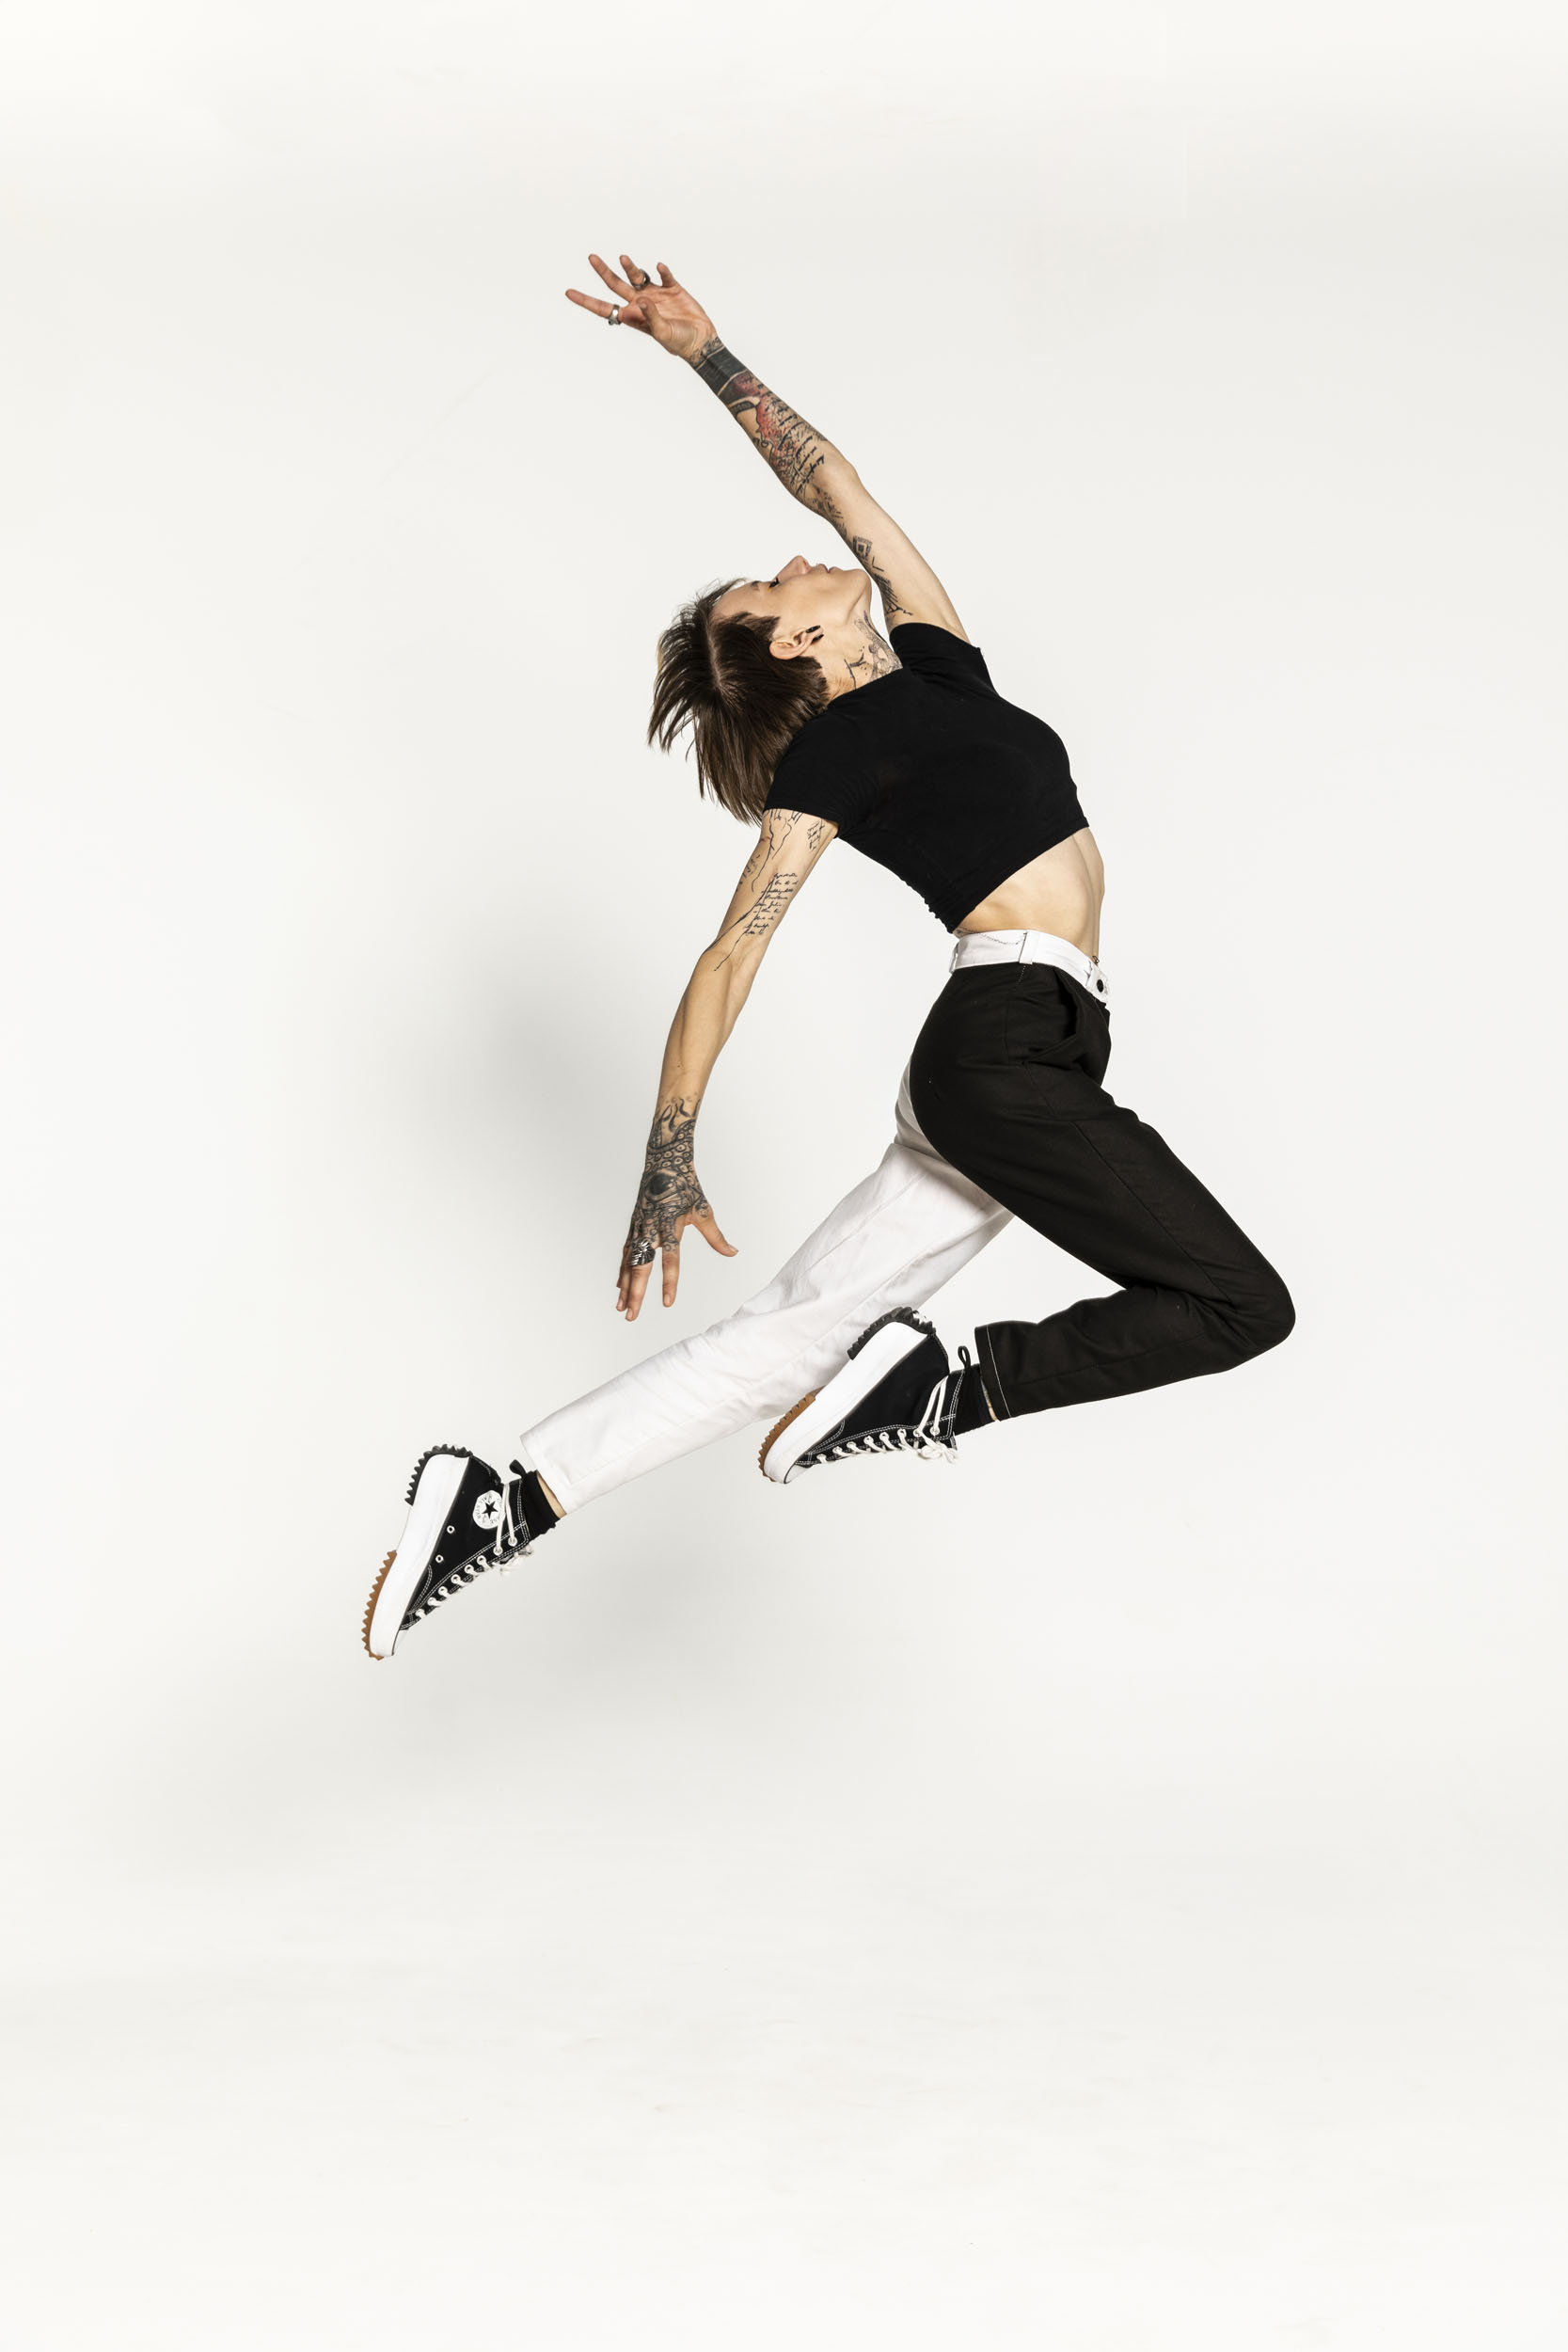 Portrait artistique d'une jeune femme tatouée qui réalise un saut devant un fond blanc. Photo de plain-pied réalisée en studio pour la banque d'images  Plainpicture.